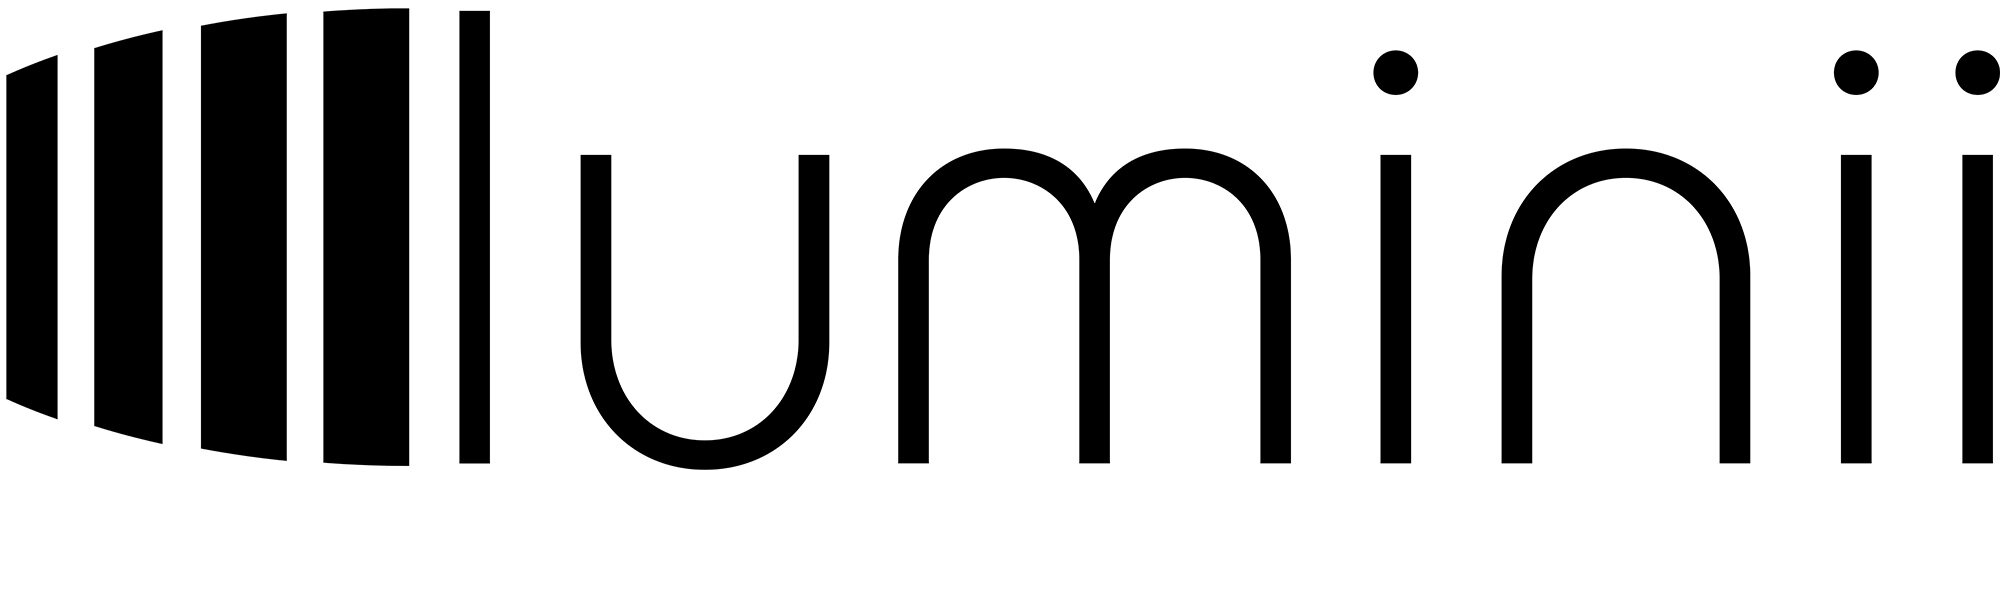 Luminii-Logo_BLK.jpg